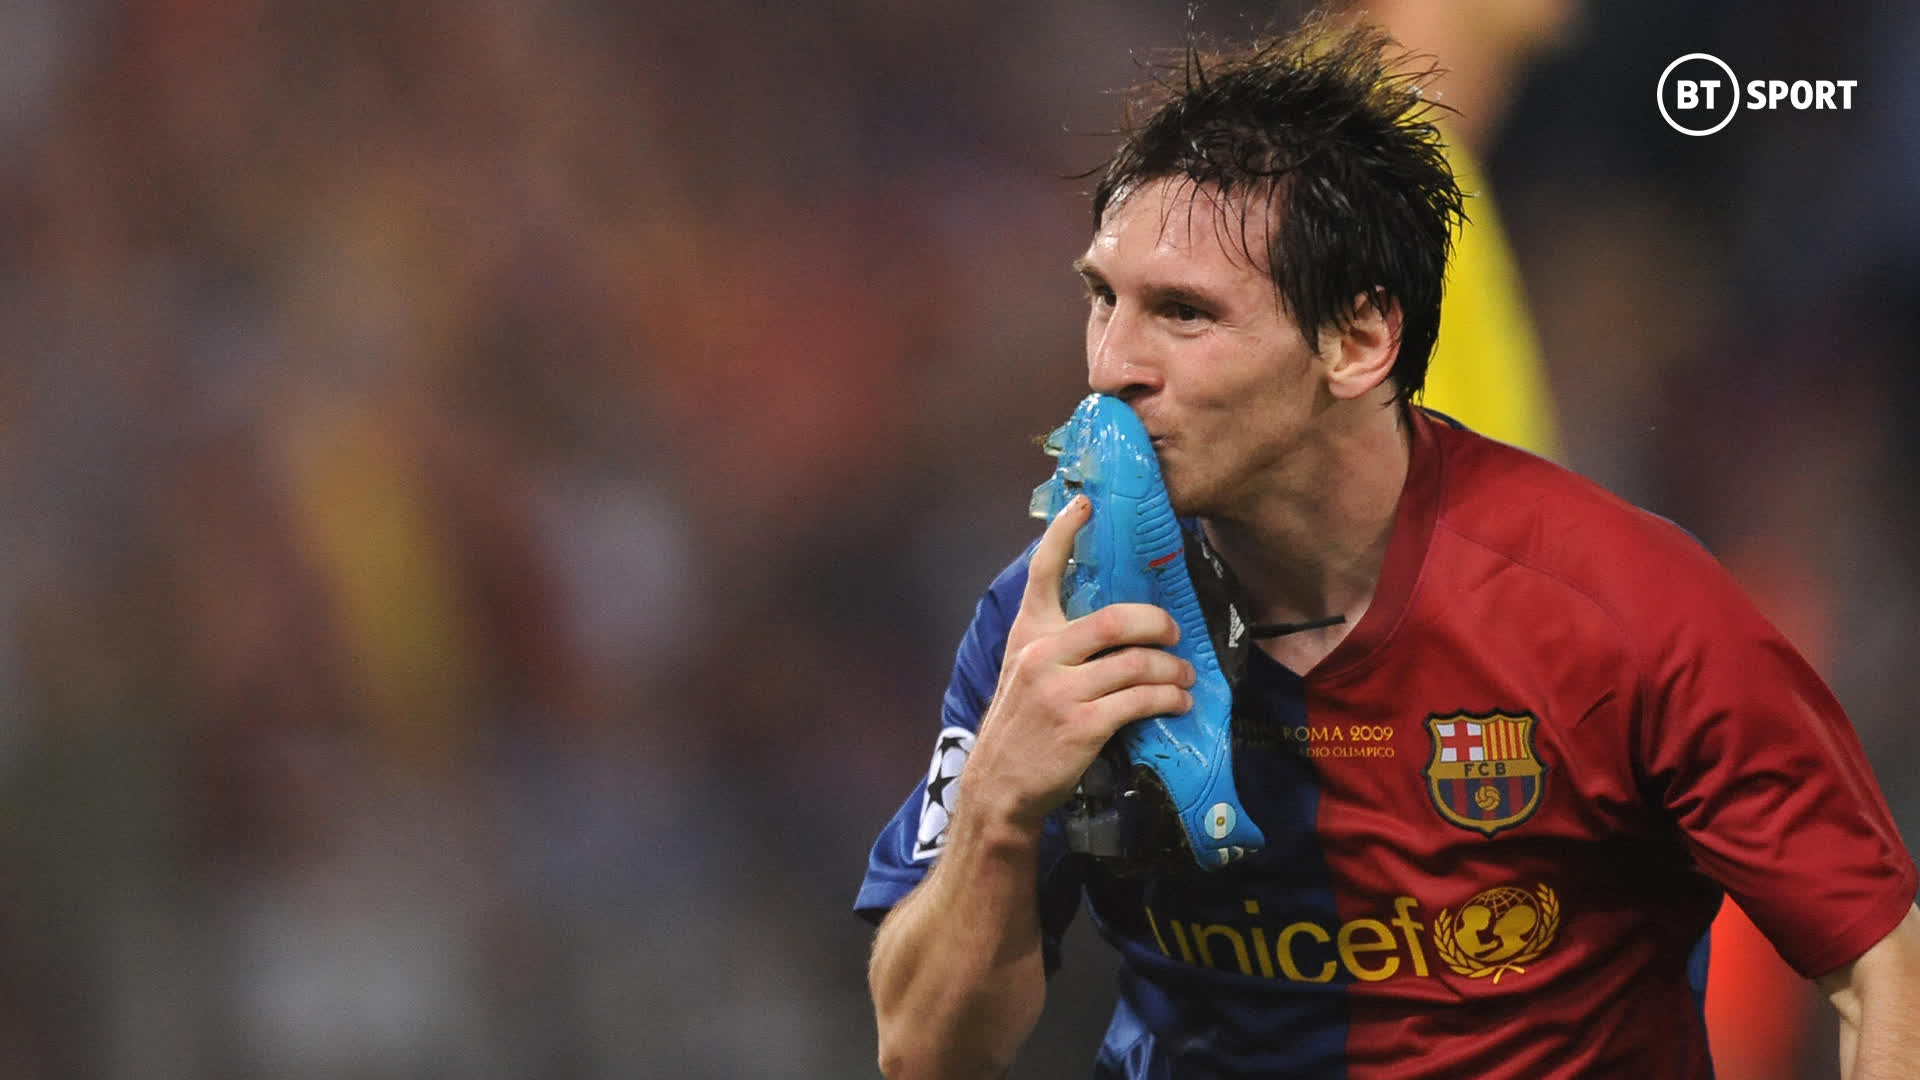 Lionel Messi Goal Celebration - hãy đắm chìm trong cảm xúc của siêu sao khi anh thể hiện niềm hạnh phúc sau mỗi bàn thắng. Hãy truy cập hình nền này để cùng ngắm nhìn và cảm nhận cùng Messi những khoảnh khắc đầy cảm xúc này.